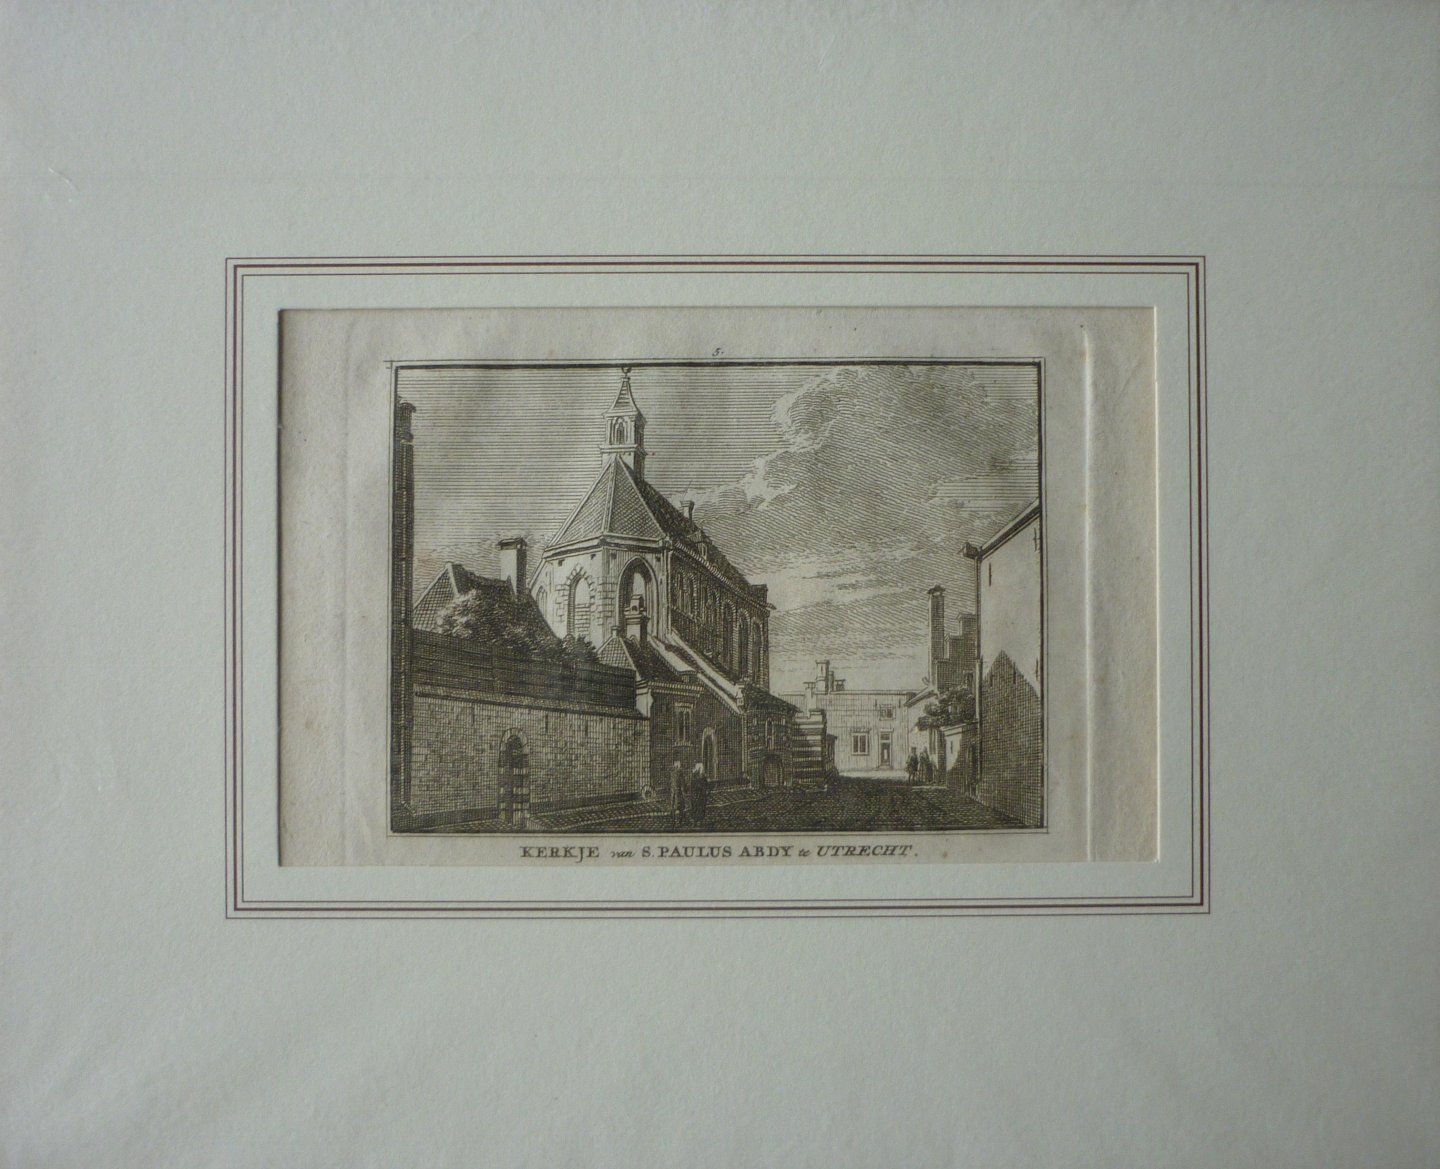 Spilman, Hendrik - Kerkje van S. Paulus Abdy te Utrecht. Originele kopergravure